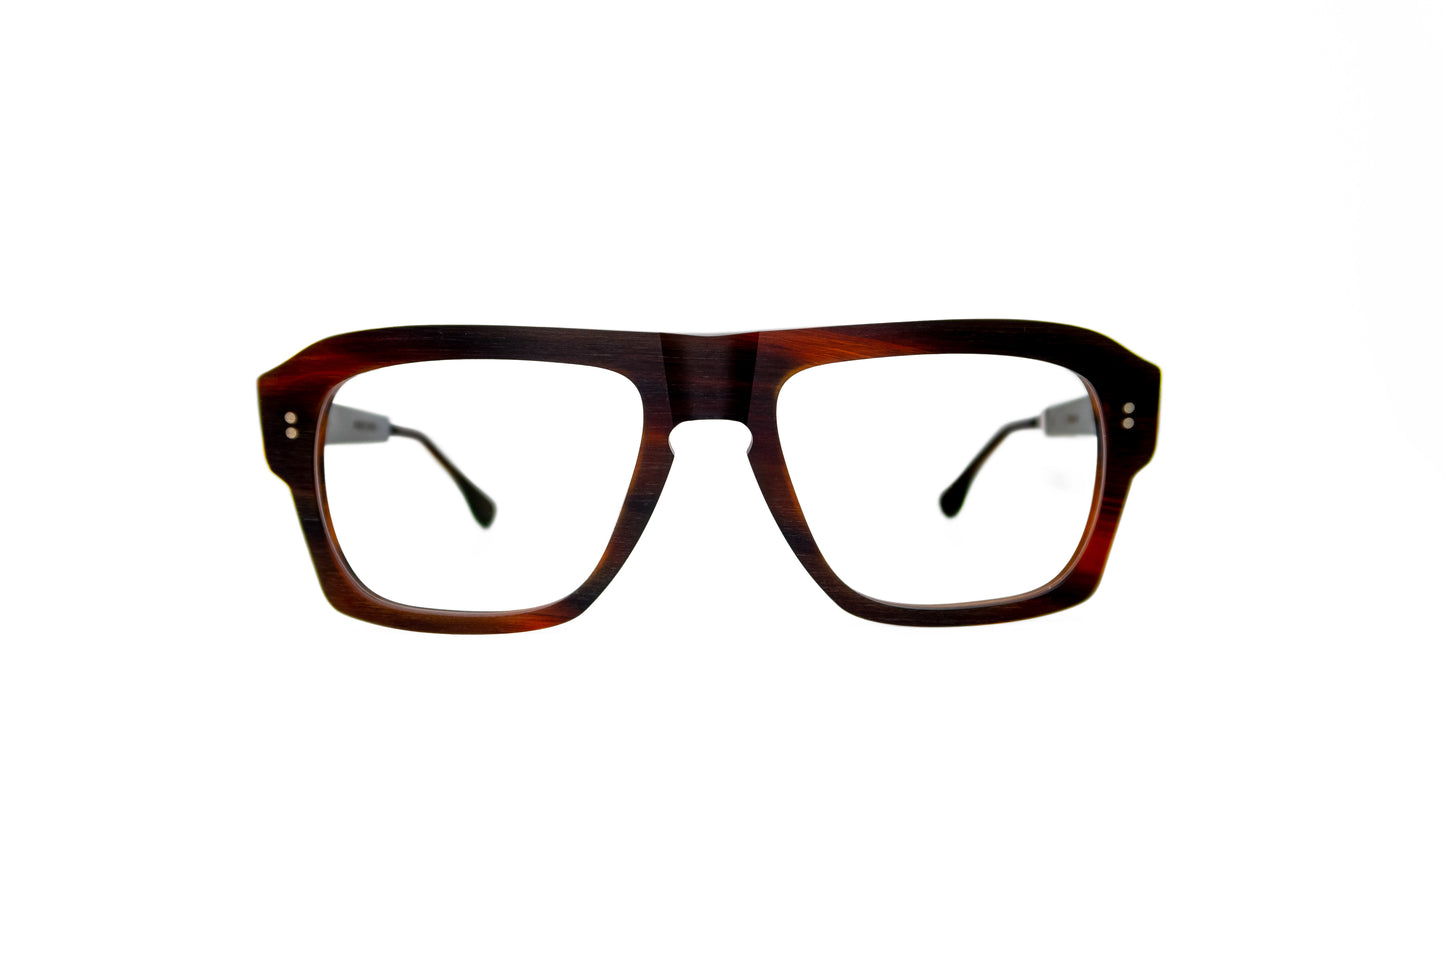 Big Kevin Rapp 236 Frames Glasses